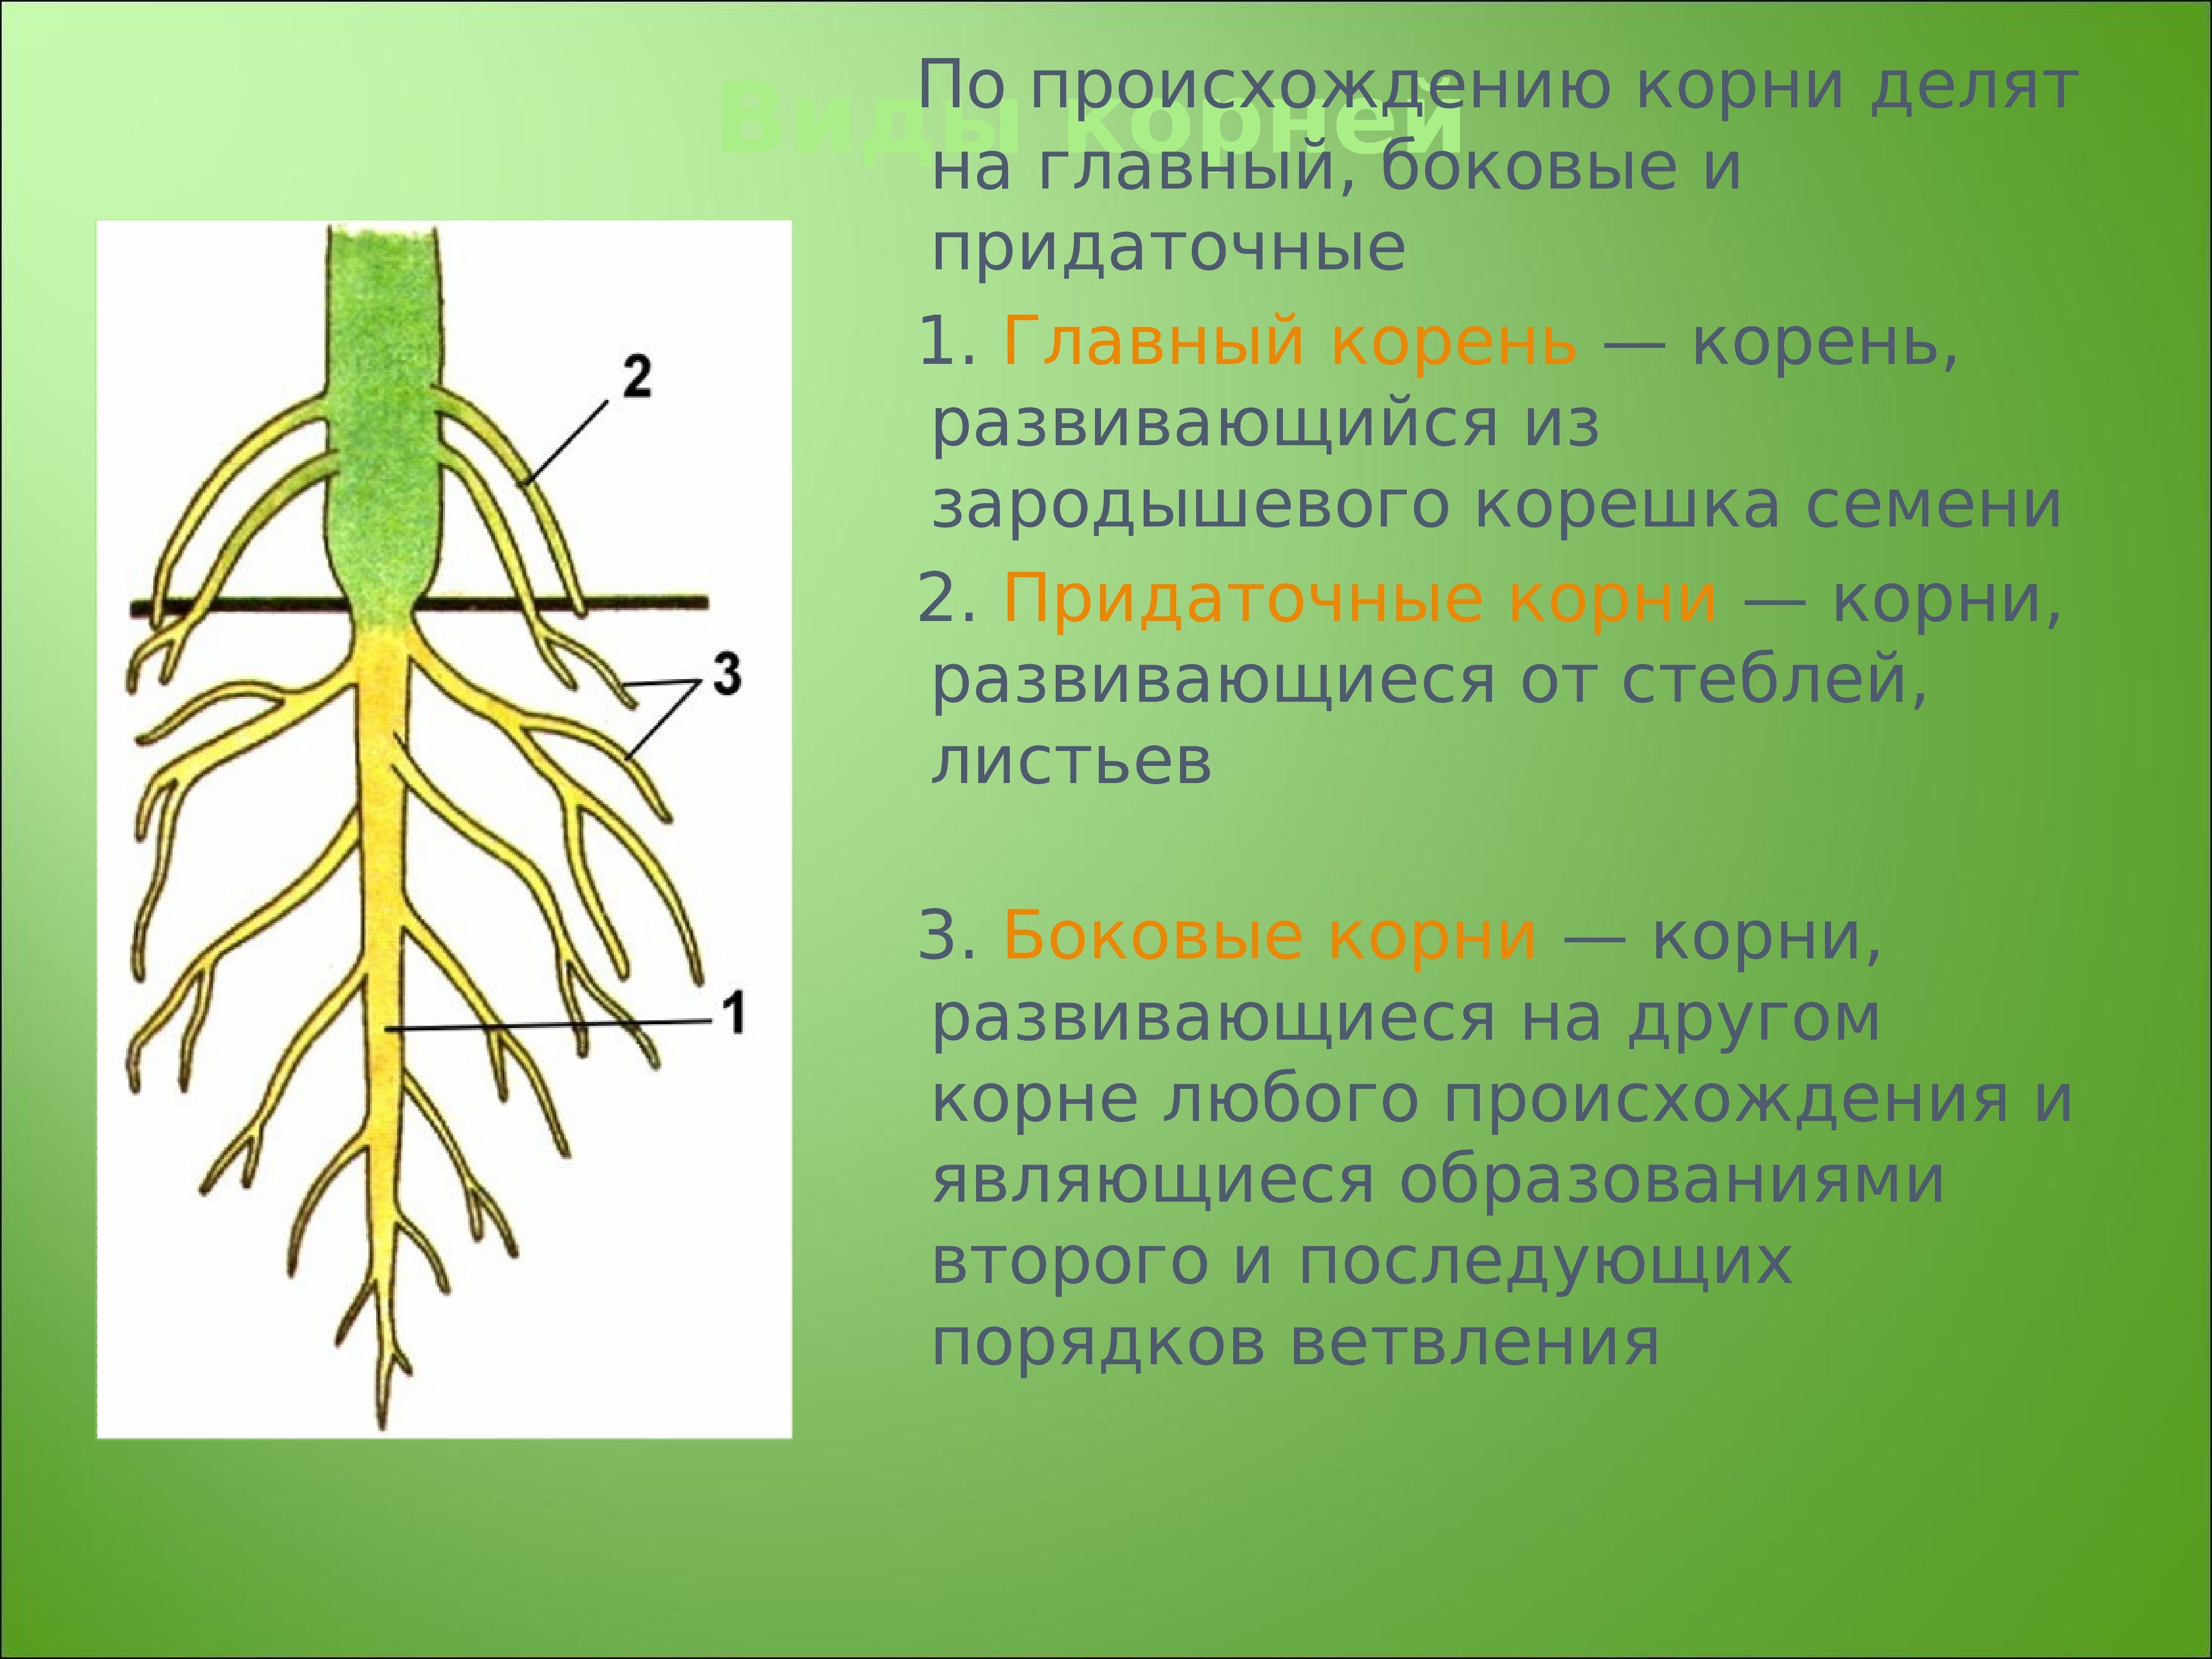 Ботаника в системе. Придаточные корни и боковые корни. Корень (ботаника).